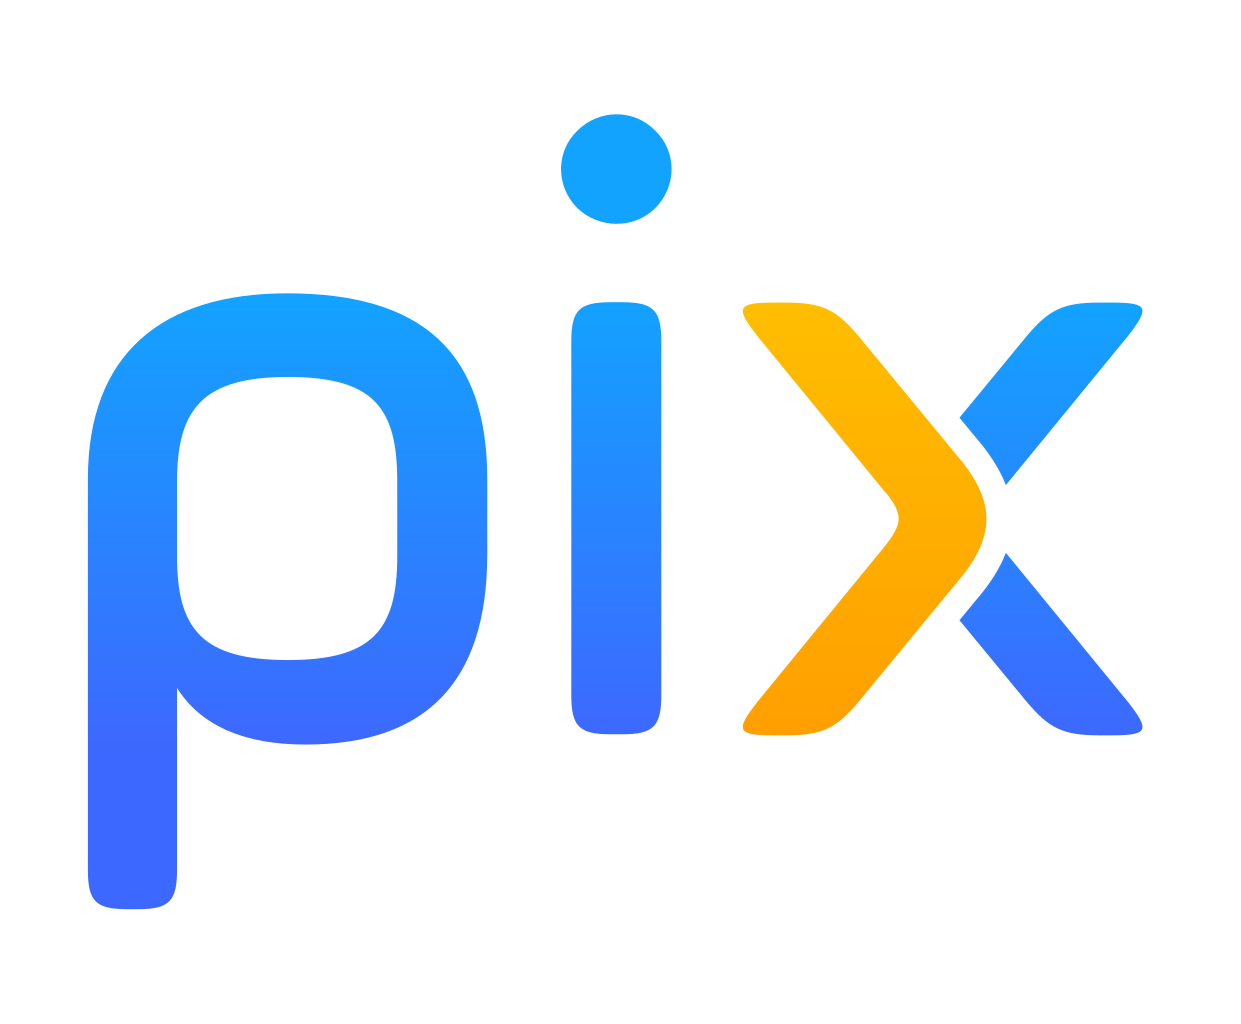 1241px-Pix_logo.svg.png